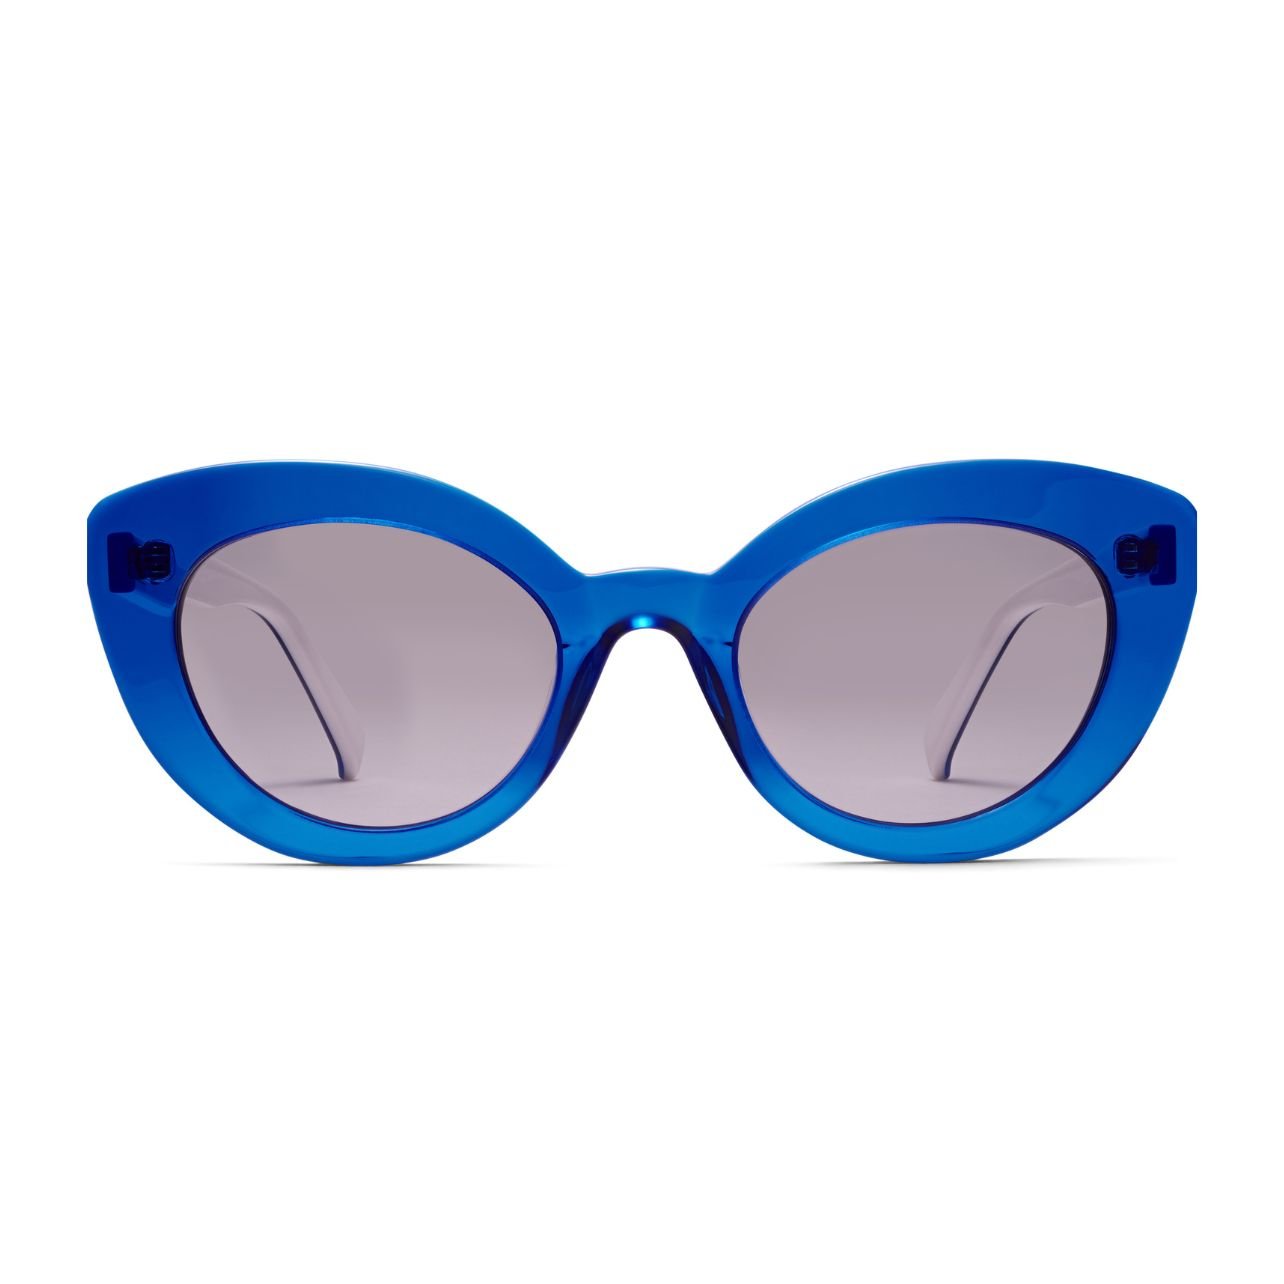 Ariane cat-eye sunglasses